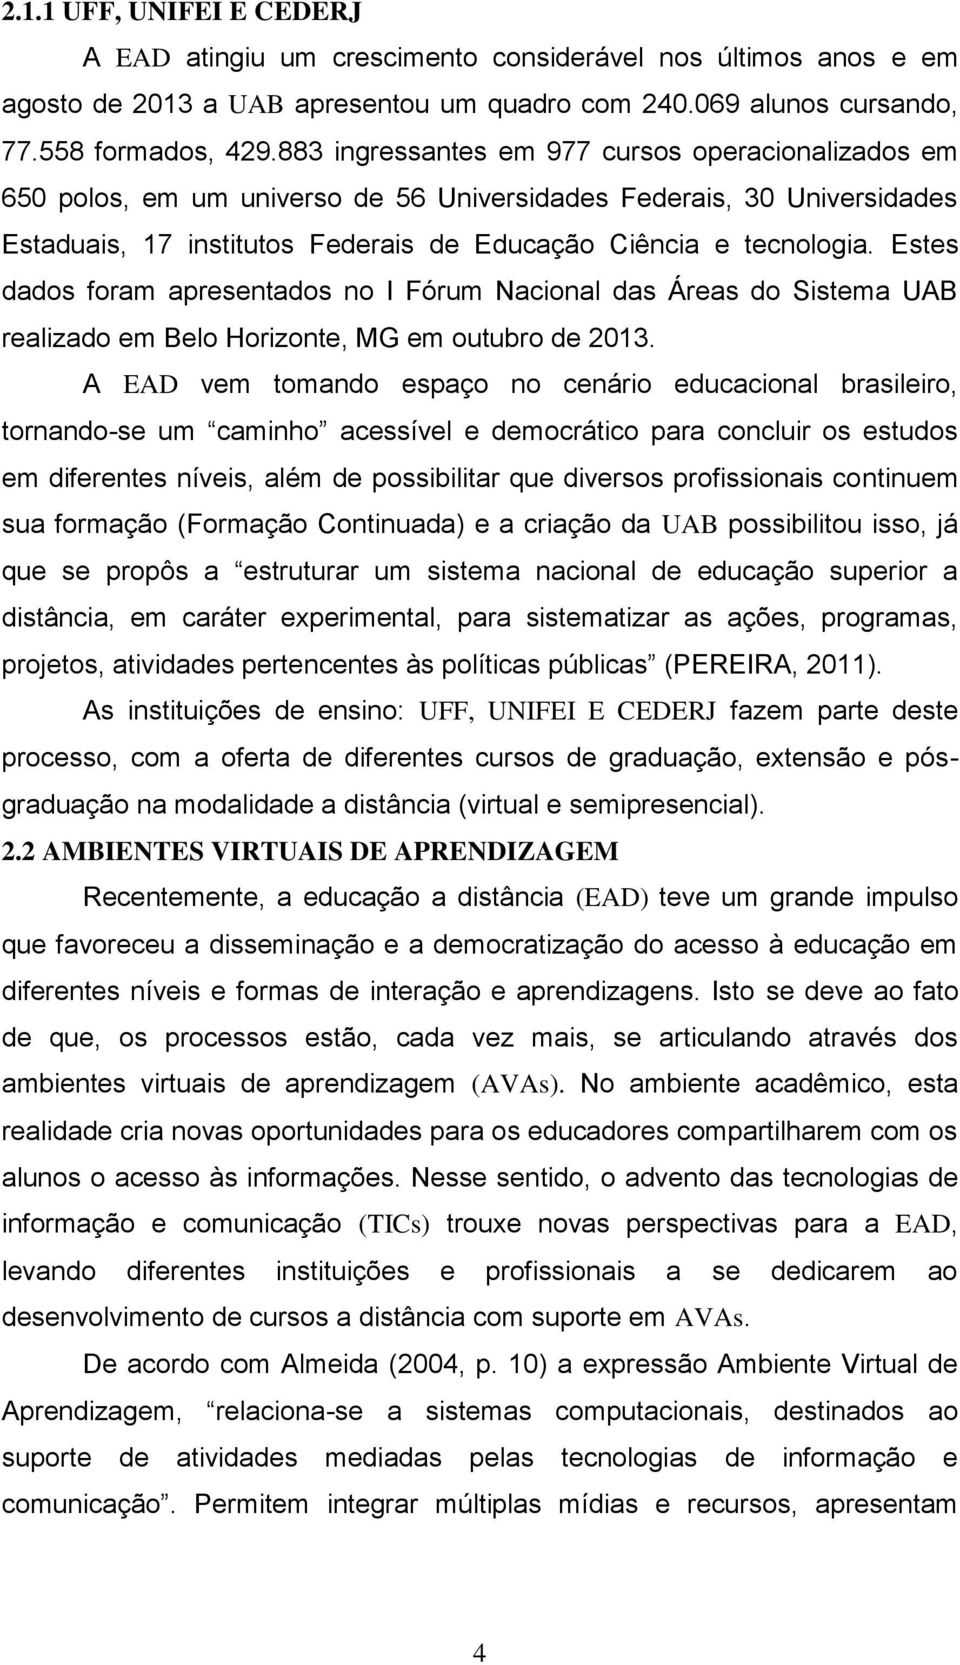 Estes dados foram apresentados no I Fórum Nacional das Áreas do Sistema UAB realizado em Belo Horizonte, MG em outubro de 2013.